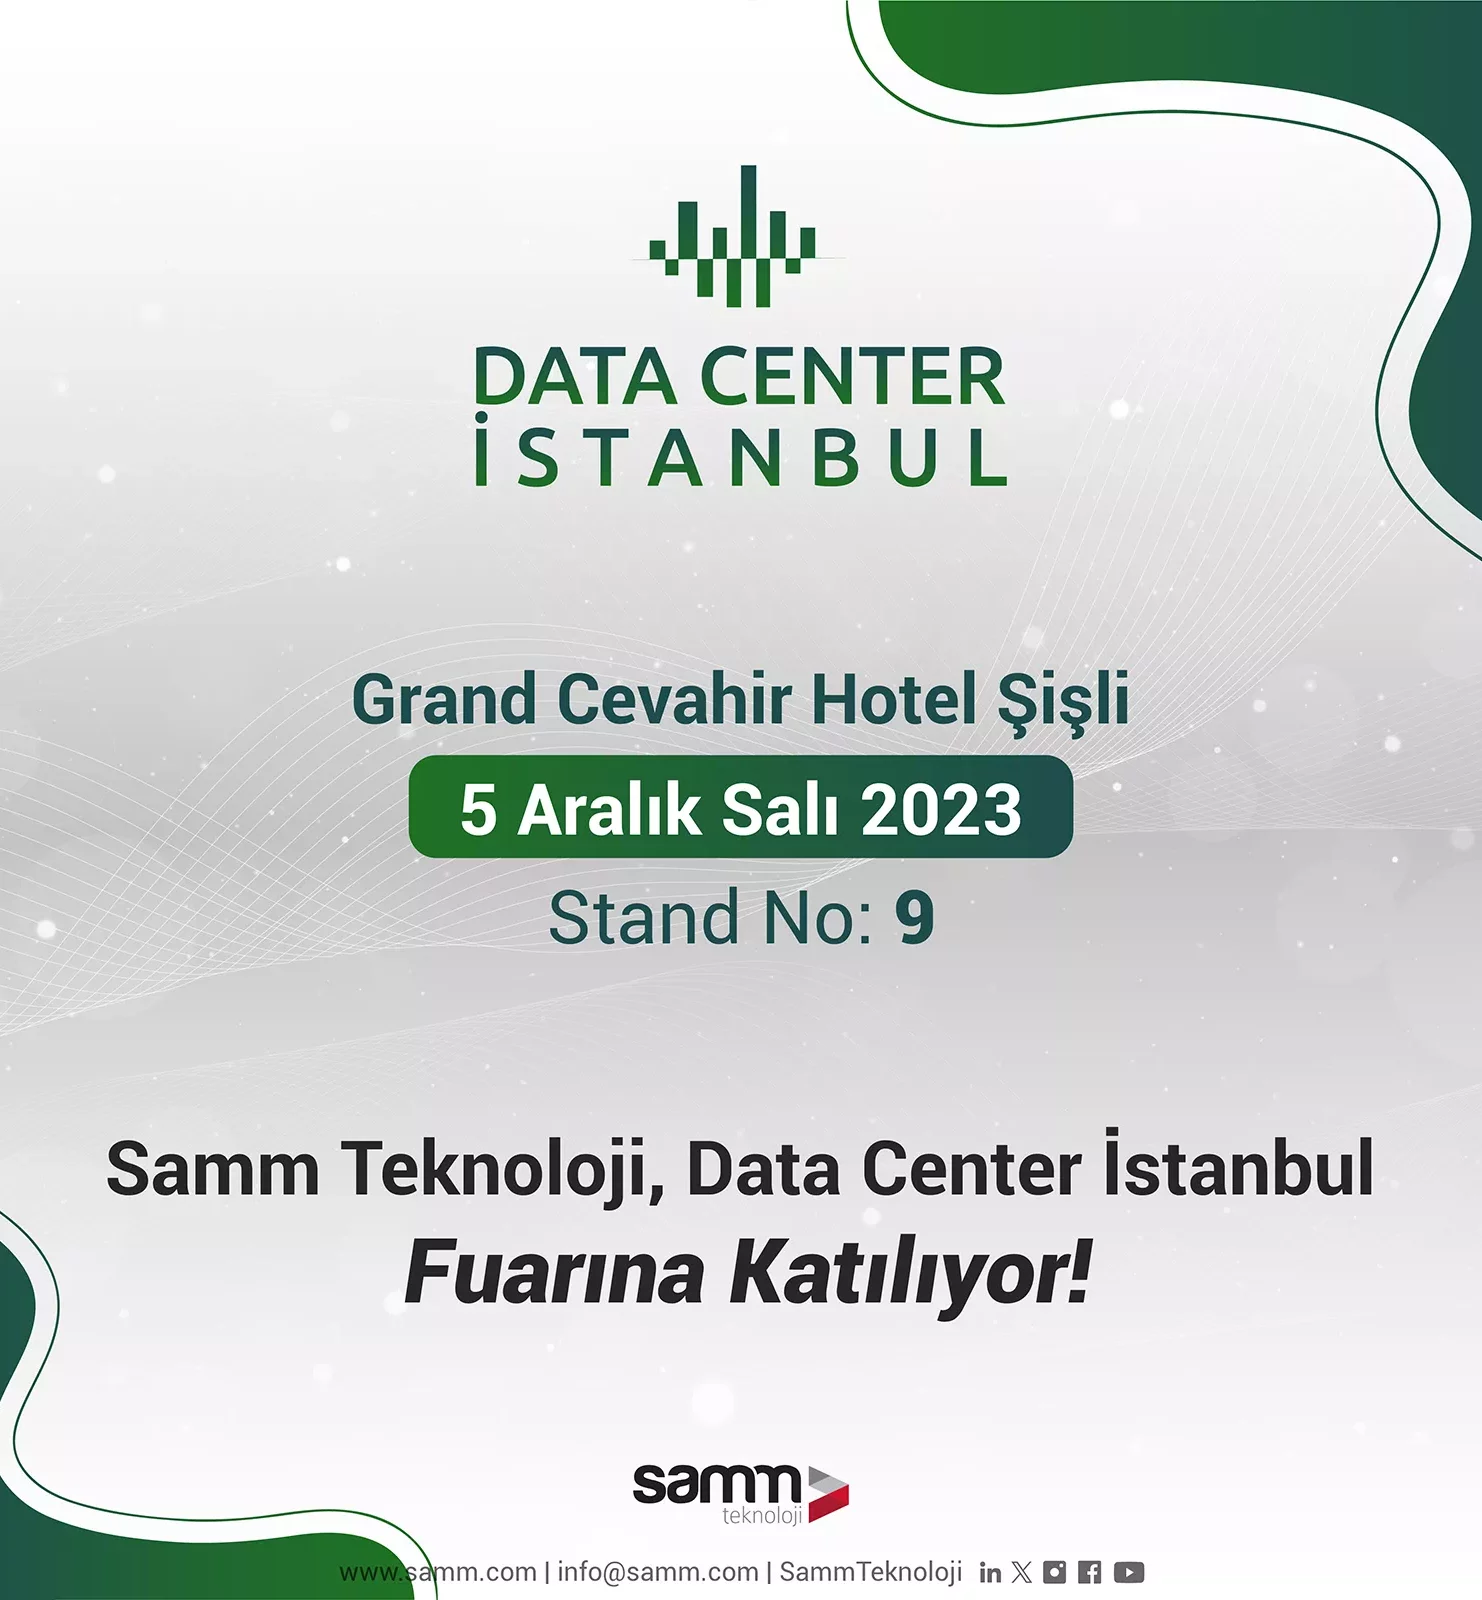 Data-Center-Istanbul-Fuari-2023-1